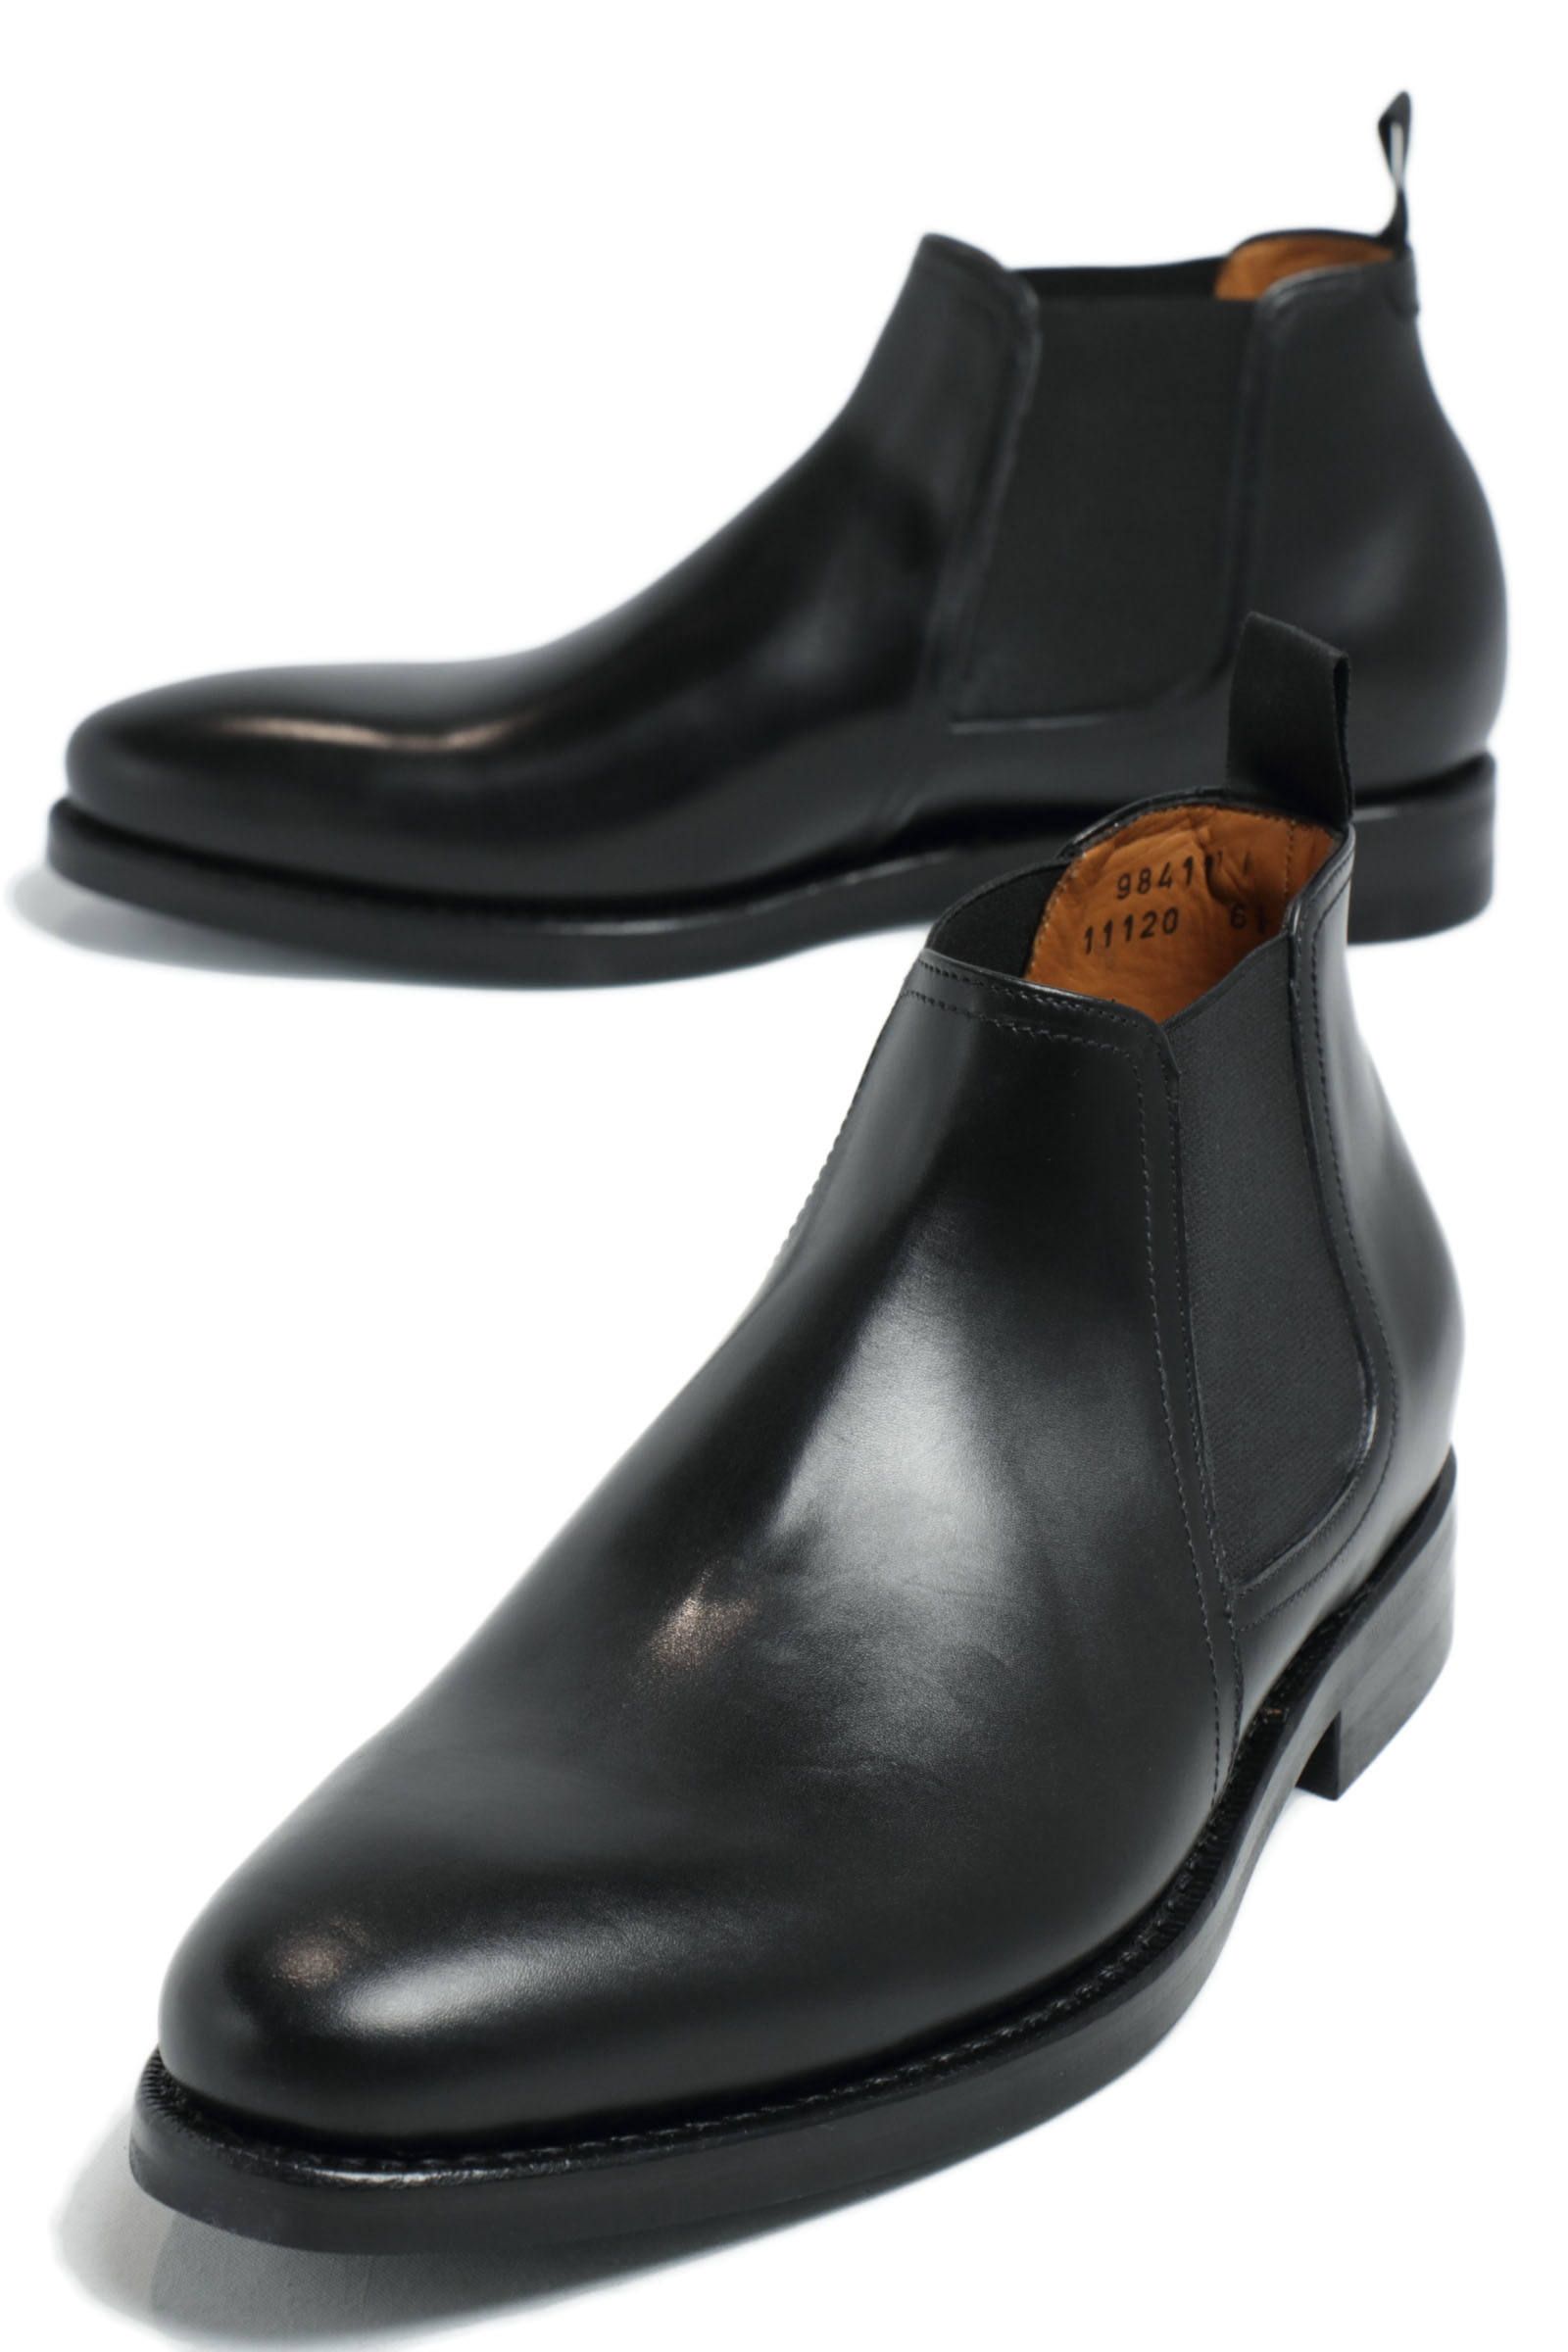 ダイナイトソール デュプイカーフ ショート サイドゴアブーツ シューズ 革靴 98411 / ブラック - 6.0